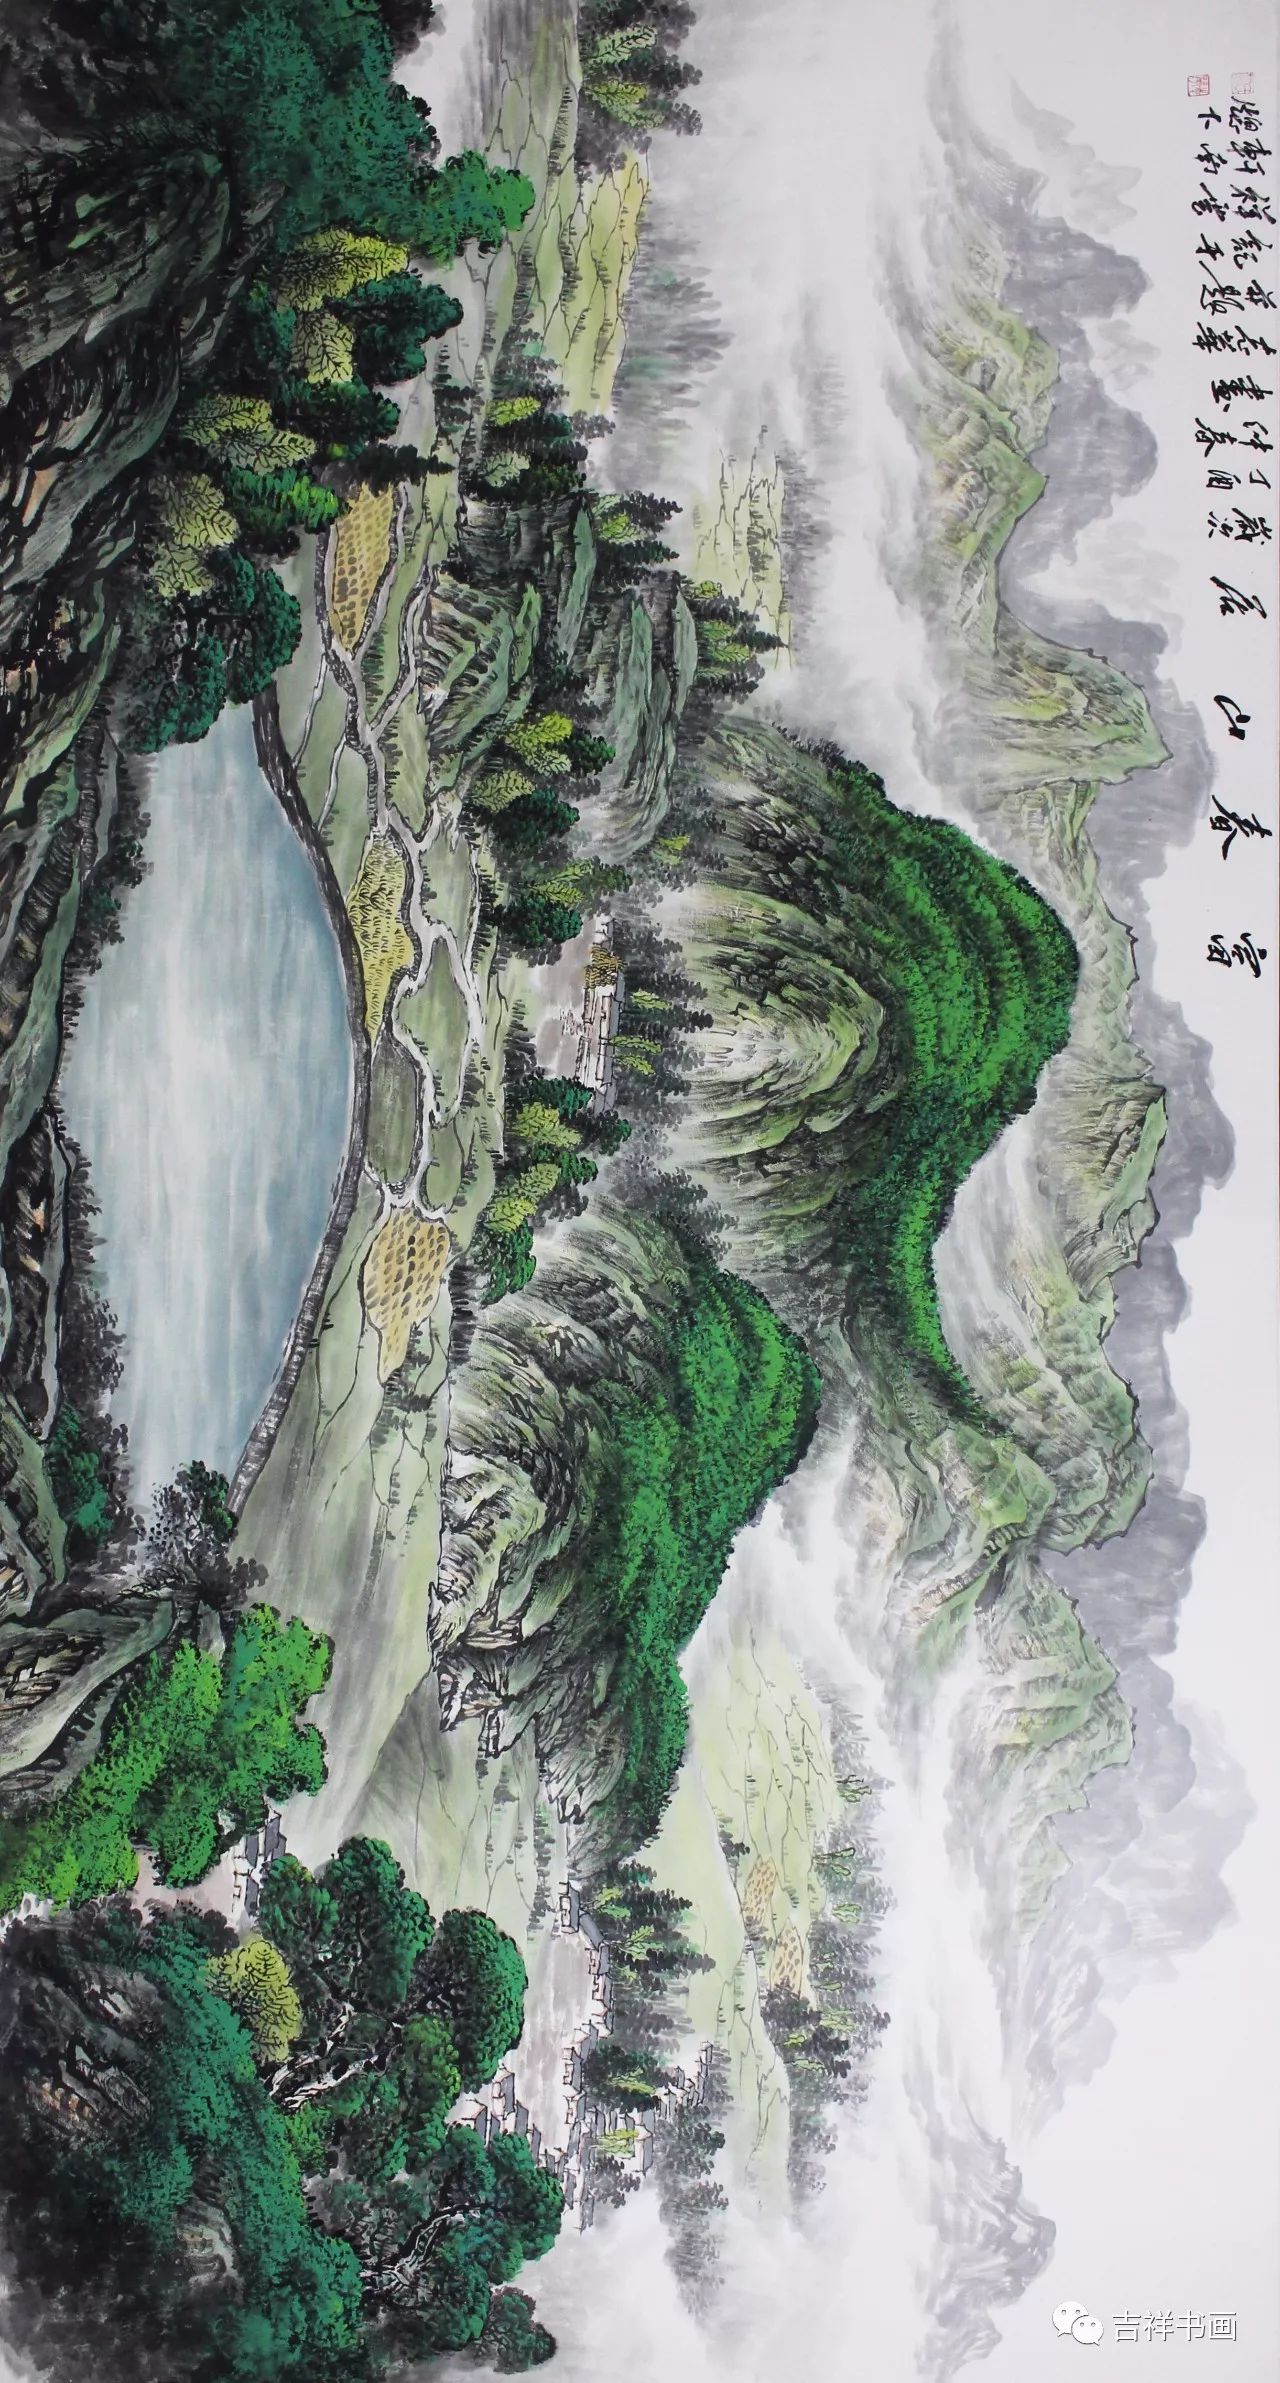 唐仕杰,江苏吴县人,现为中国国际书画艺术研究会会员,善画山水和花鸟